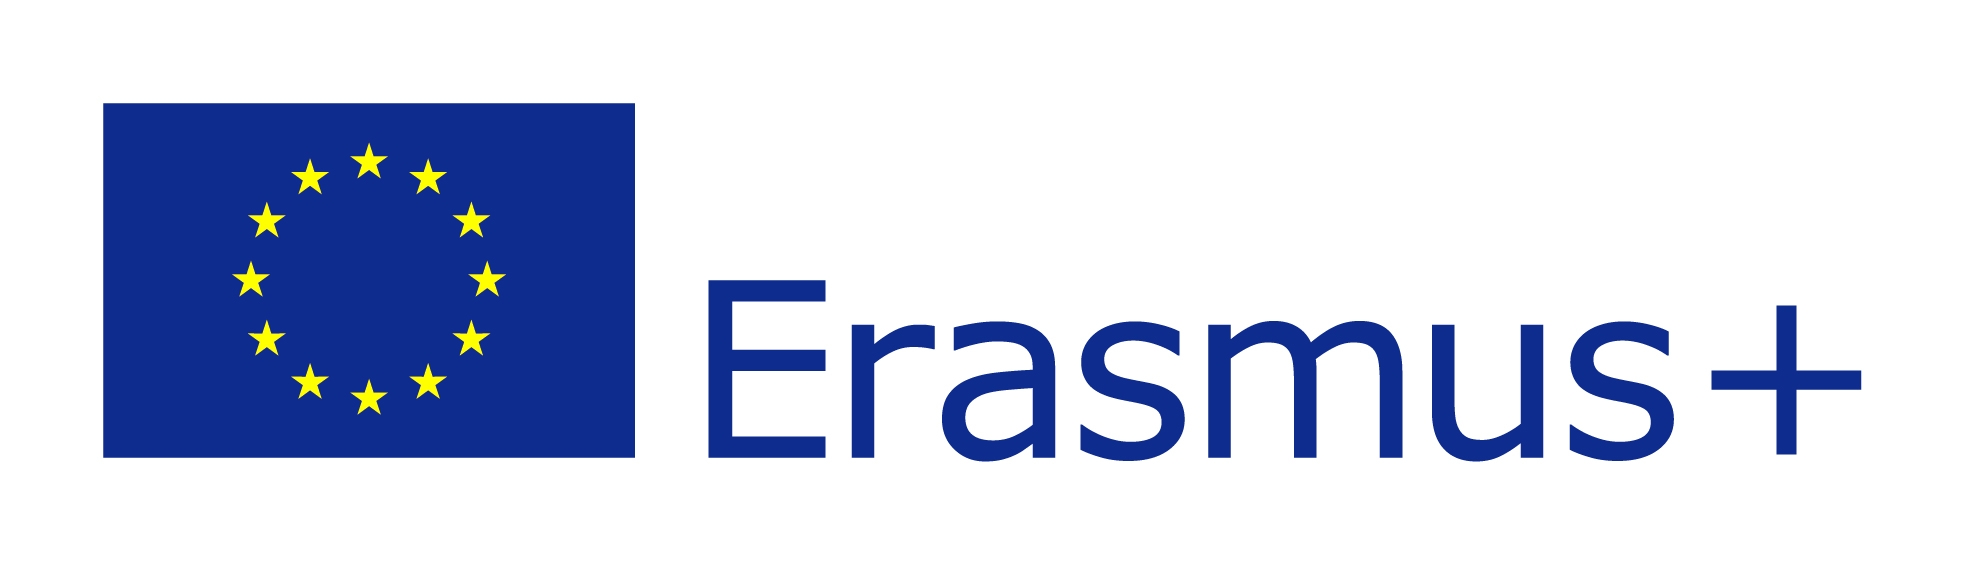 EU-flag-Erasmus_vect_POS.jpg#asset:11255